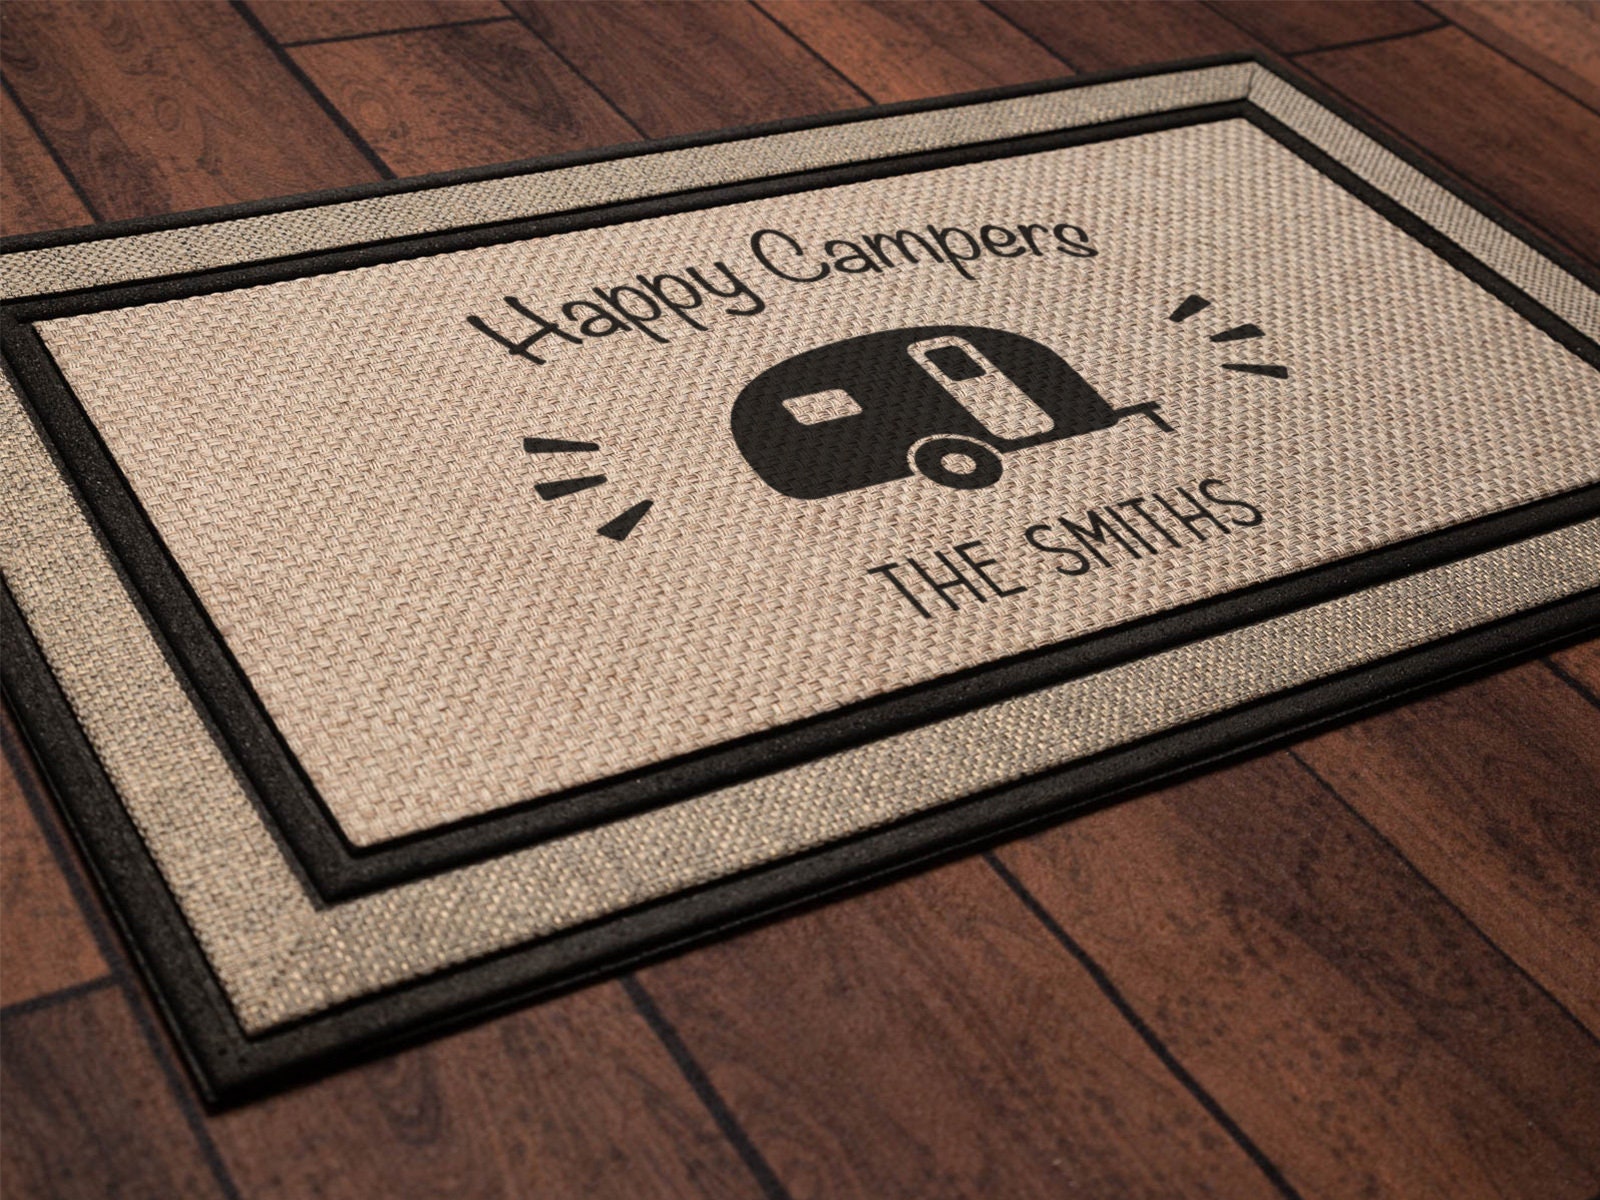 Doormat Happy Camper - Function Junction